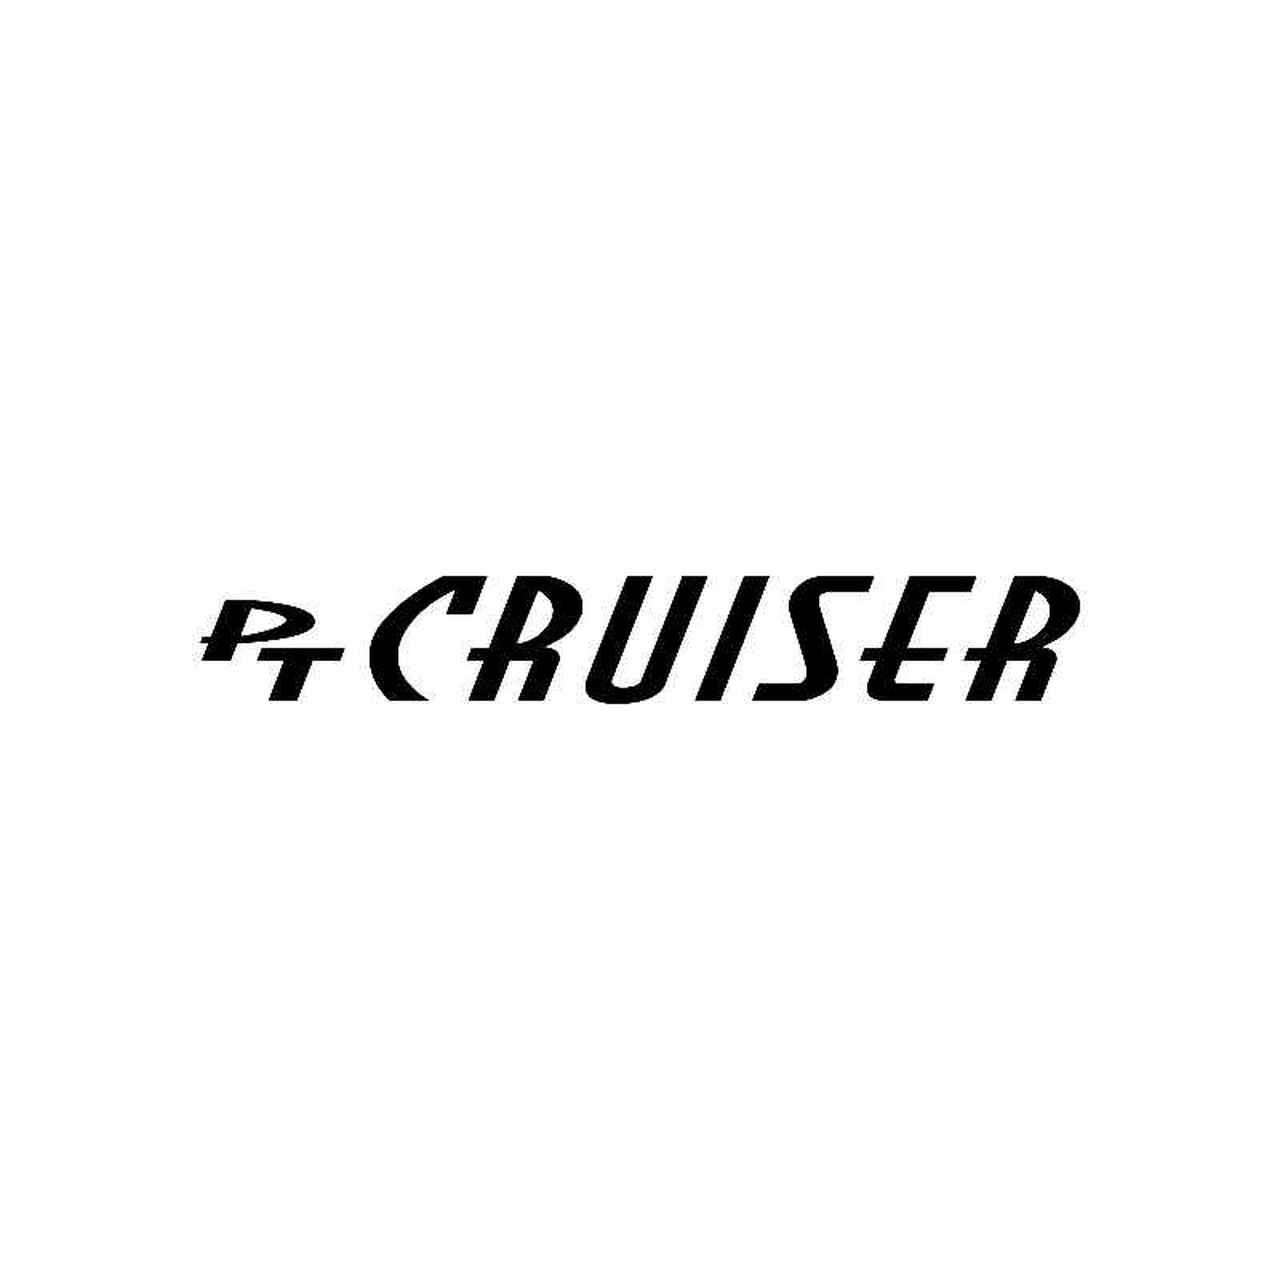 Cruiser Logo - Pt Cruiser Logo Jdm Decal